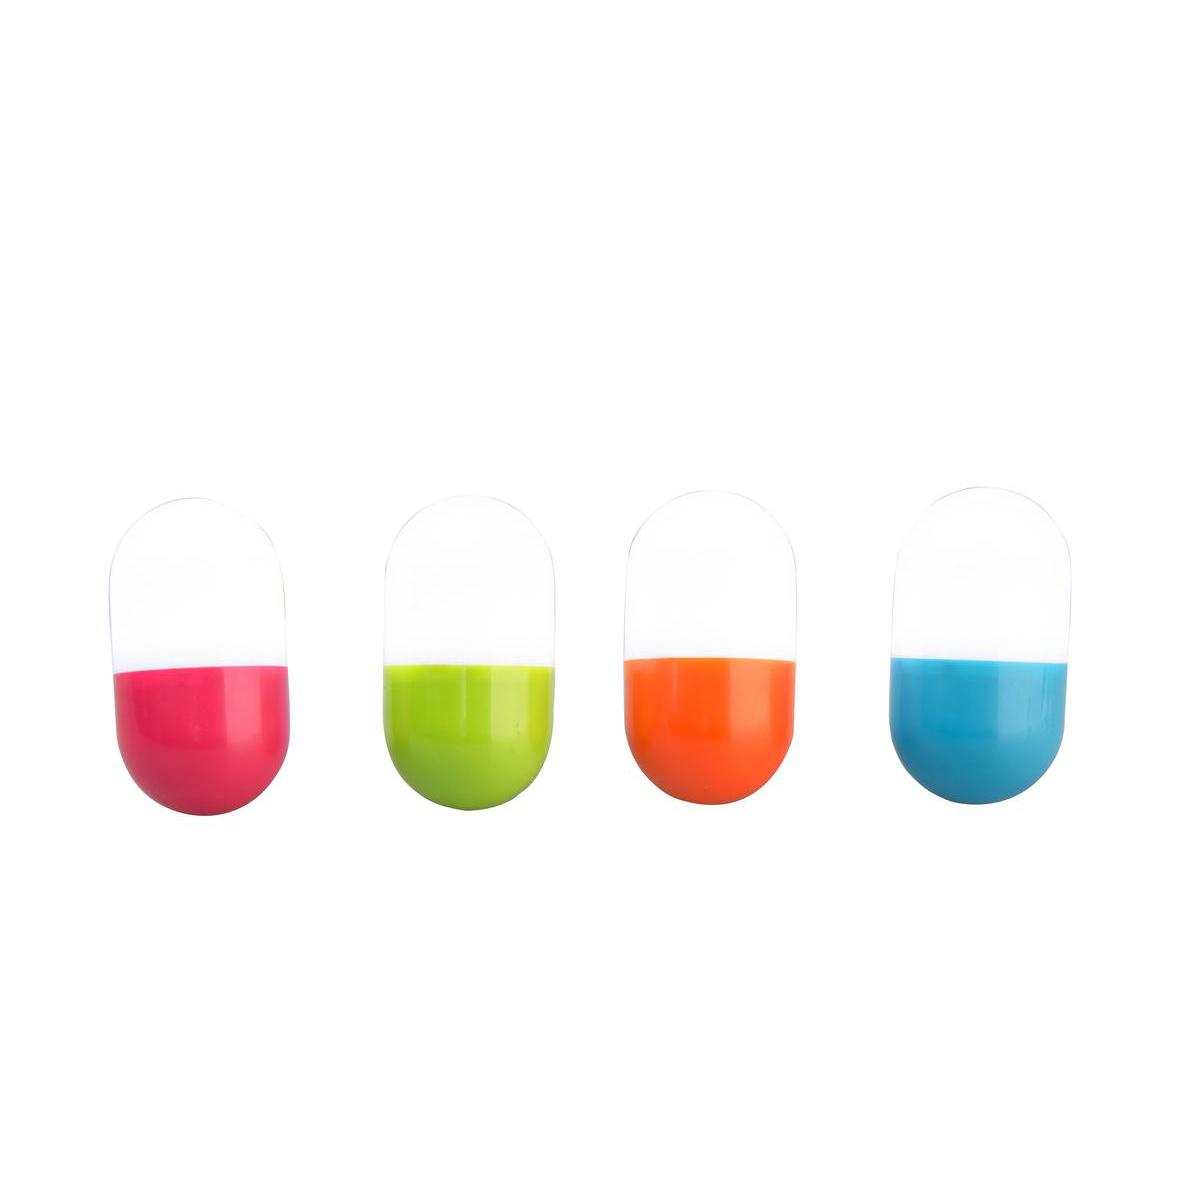 Capsule lumineuse - ABS et polypropylène - Ø 4,4 x 8,1 cm - Différents coloris